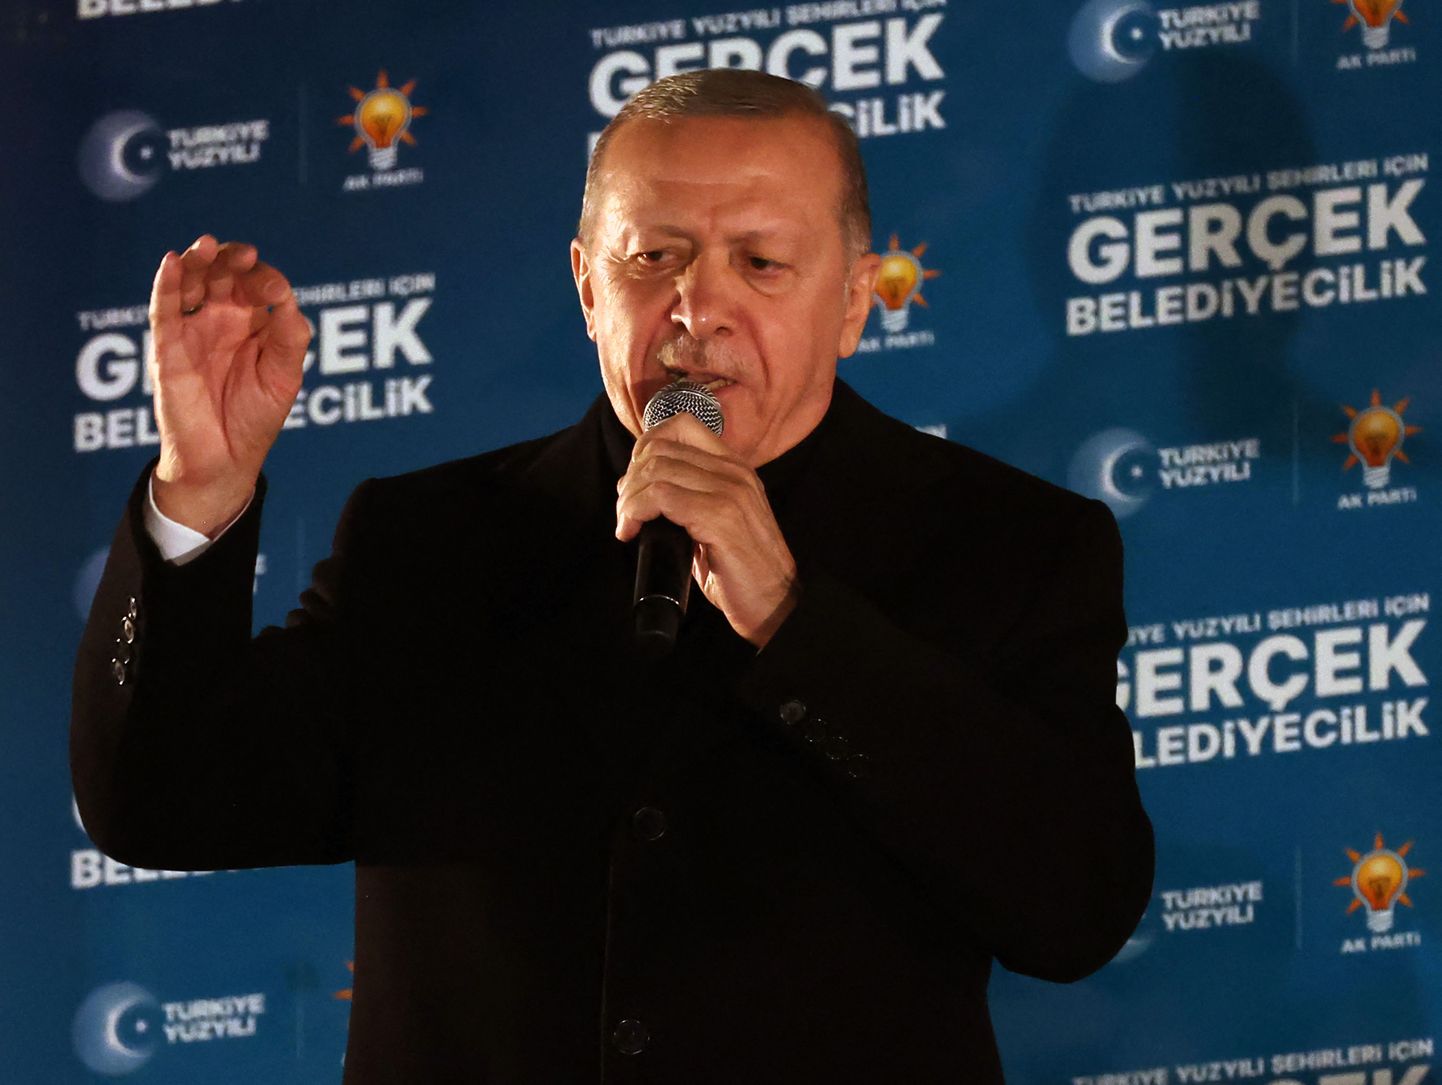 Türgi president Recep Tayyip Erdoğan kõnelemas toetajatele.